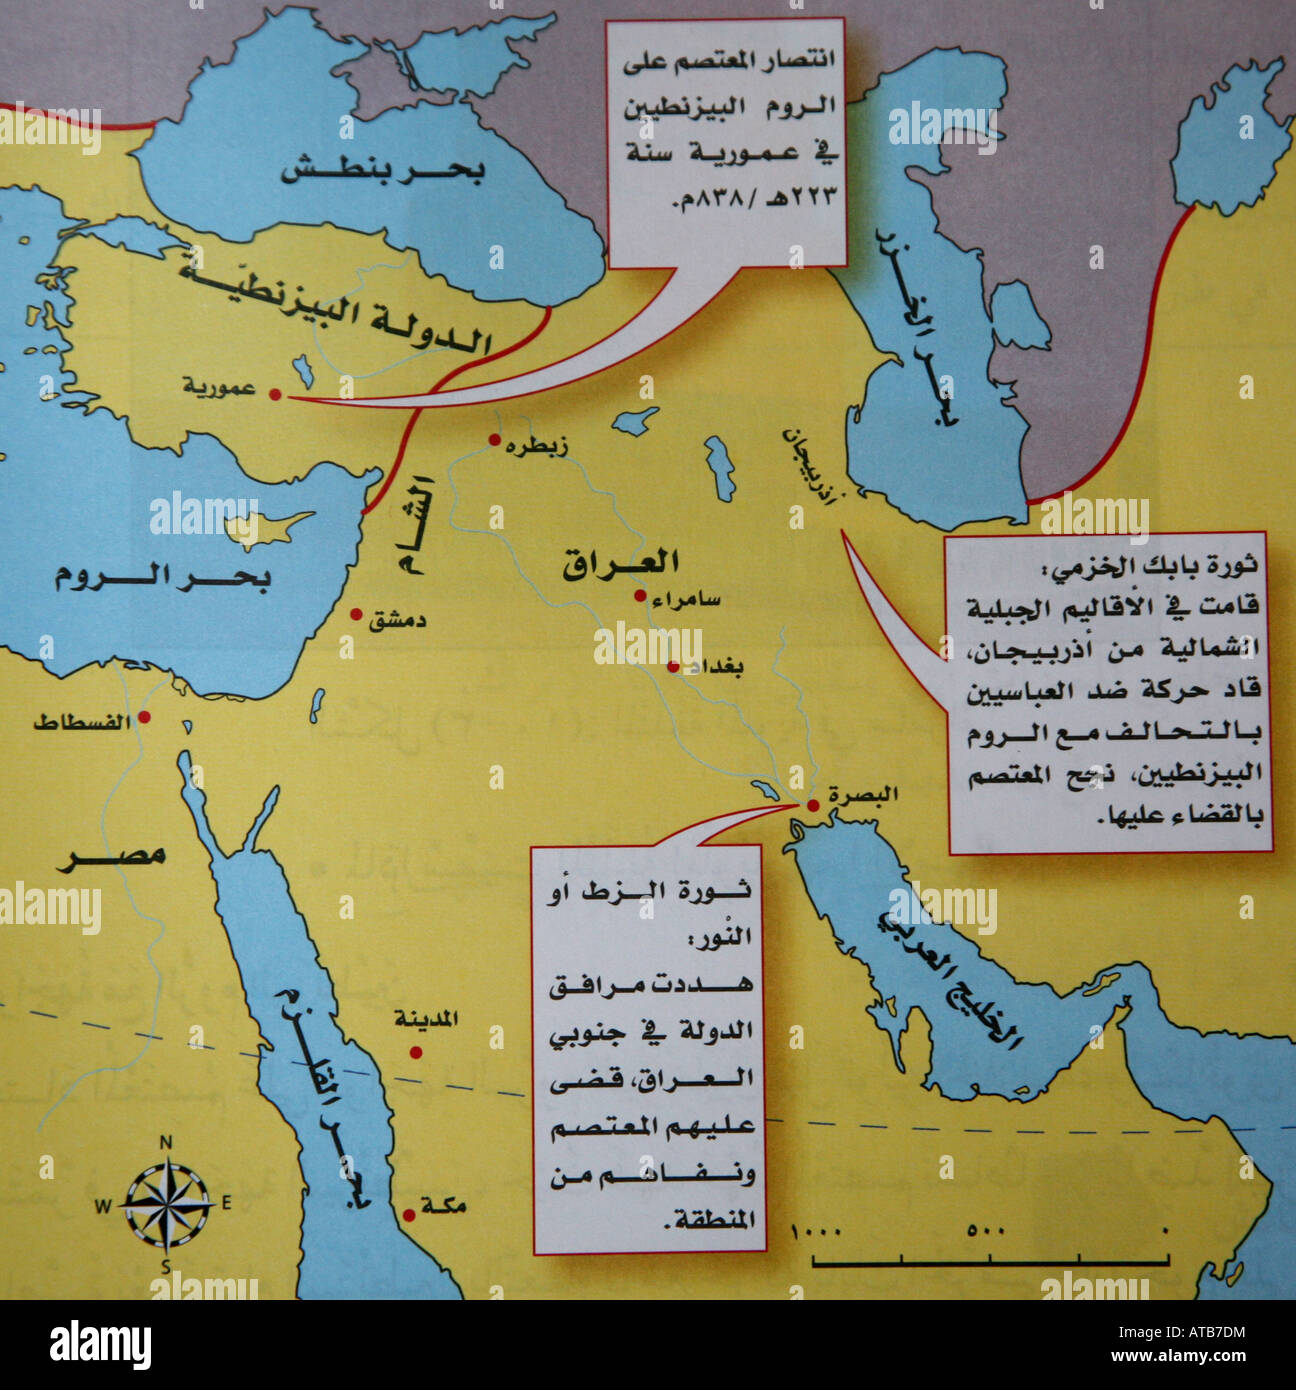 Una mappa del Medio Oriente utilizzando script arabo Foto Stock